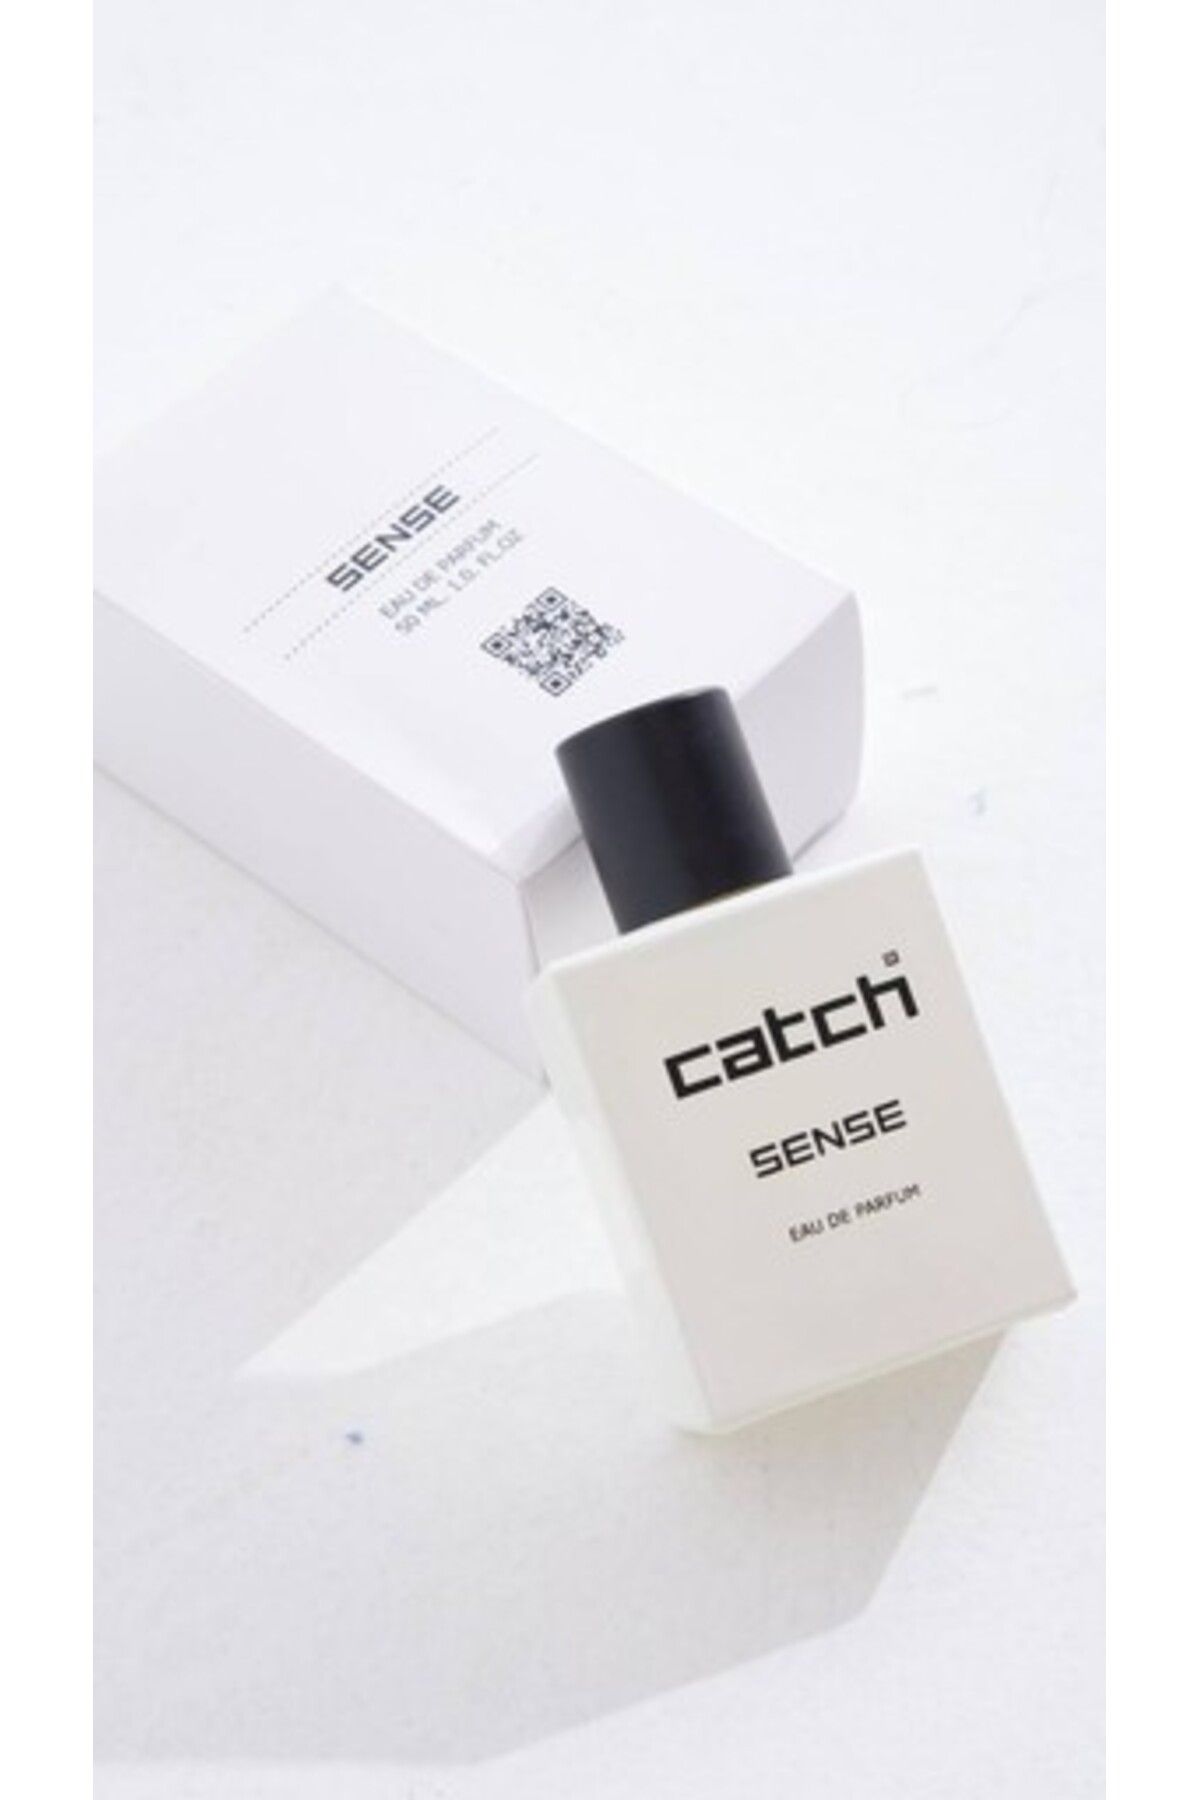 Catch Unisex Parfüm Sense 50 ml EAU C-1 Edp